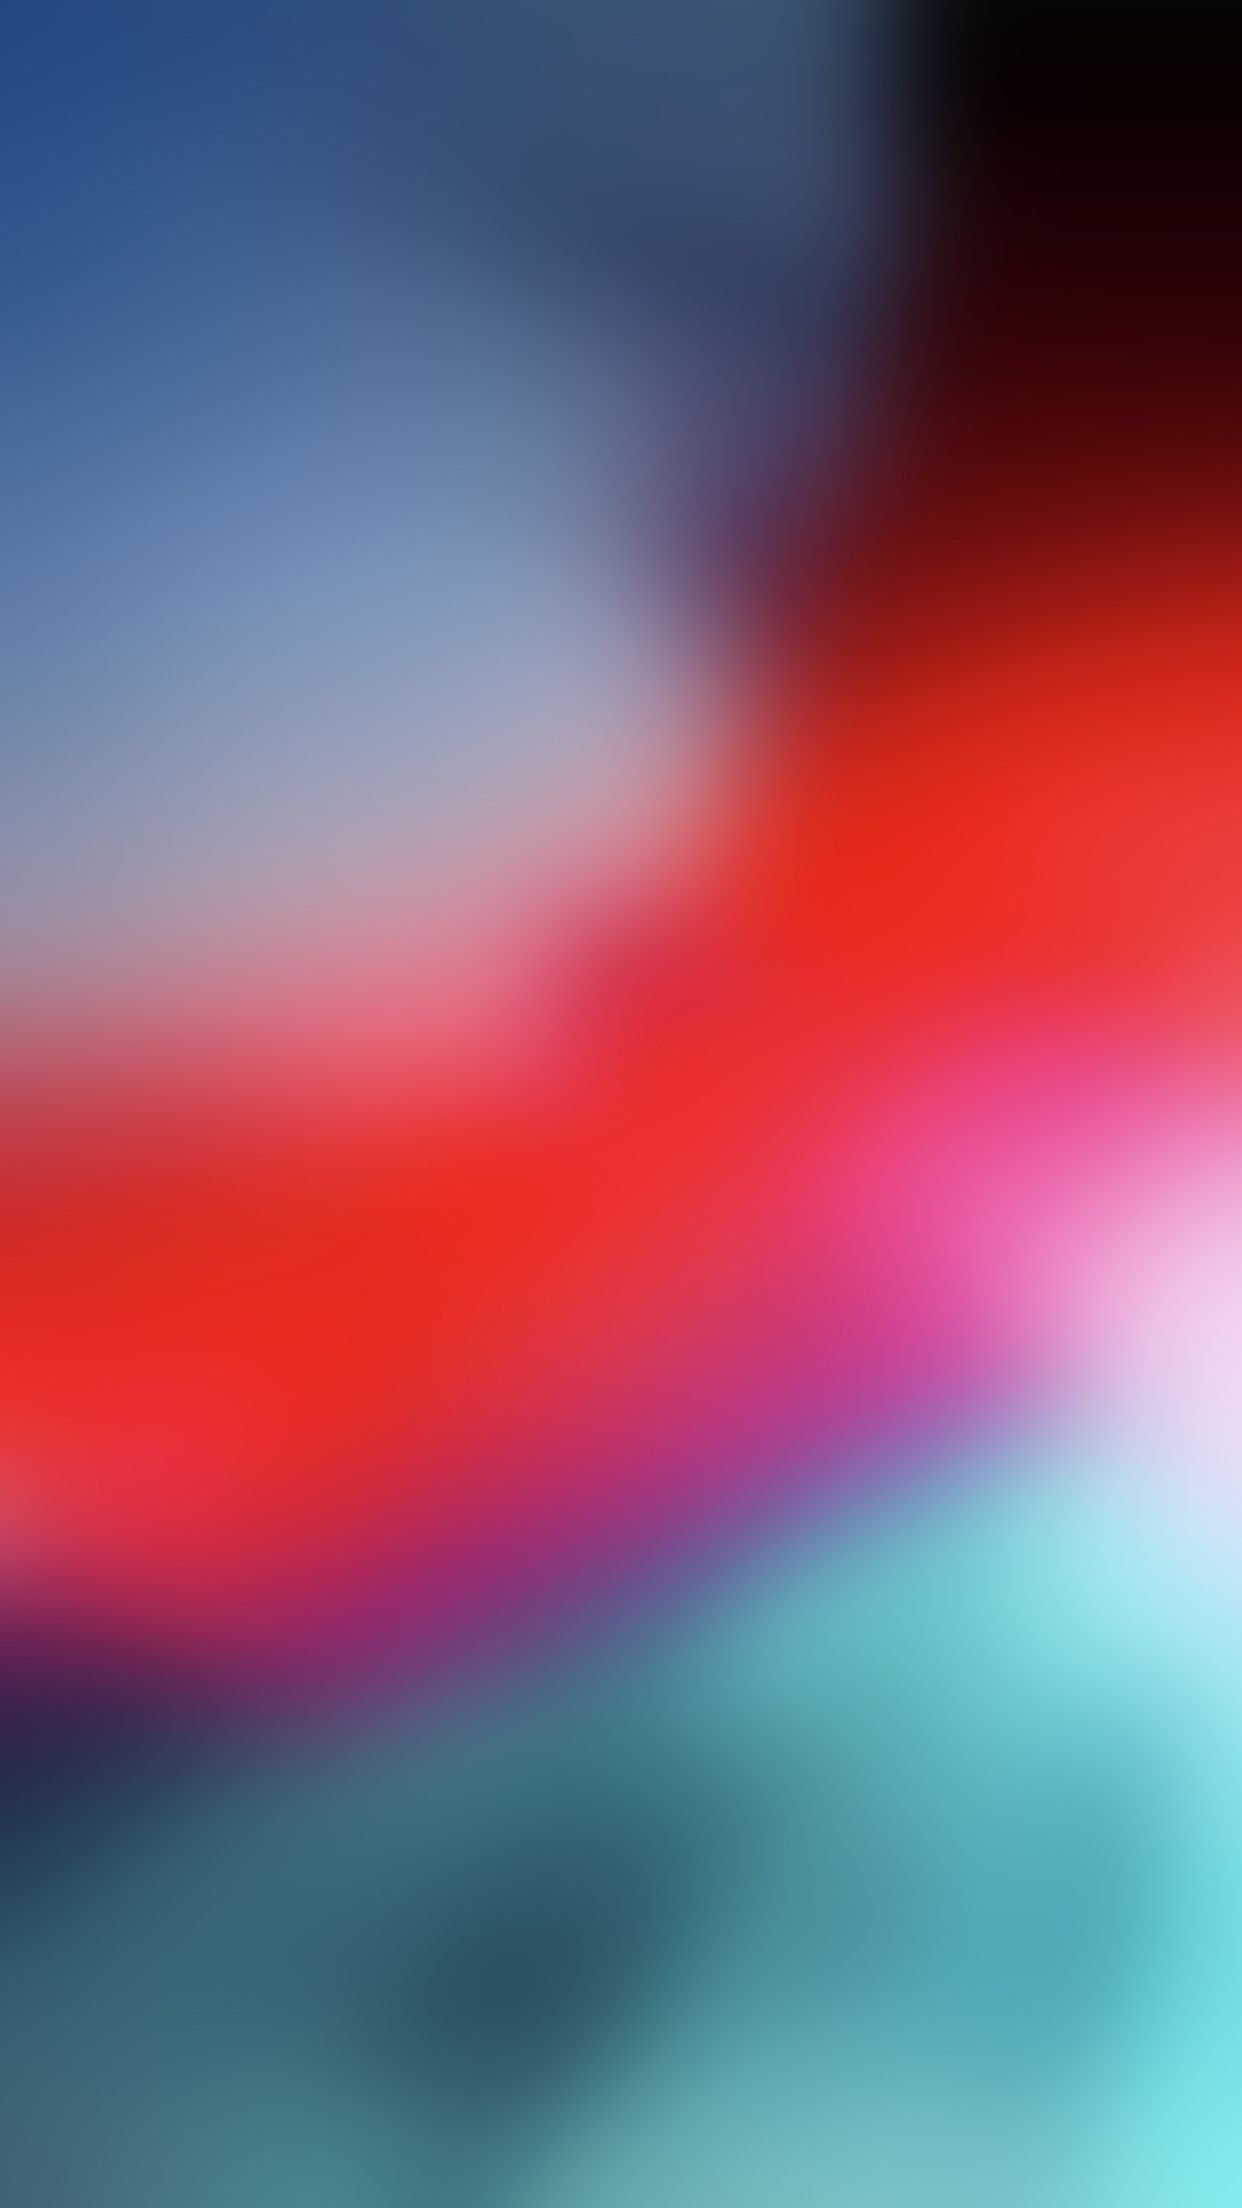 Blur Wallpaper